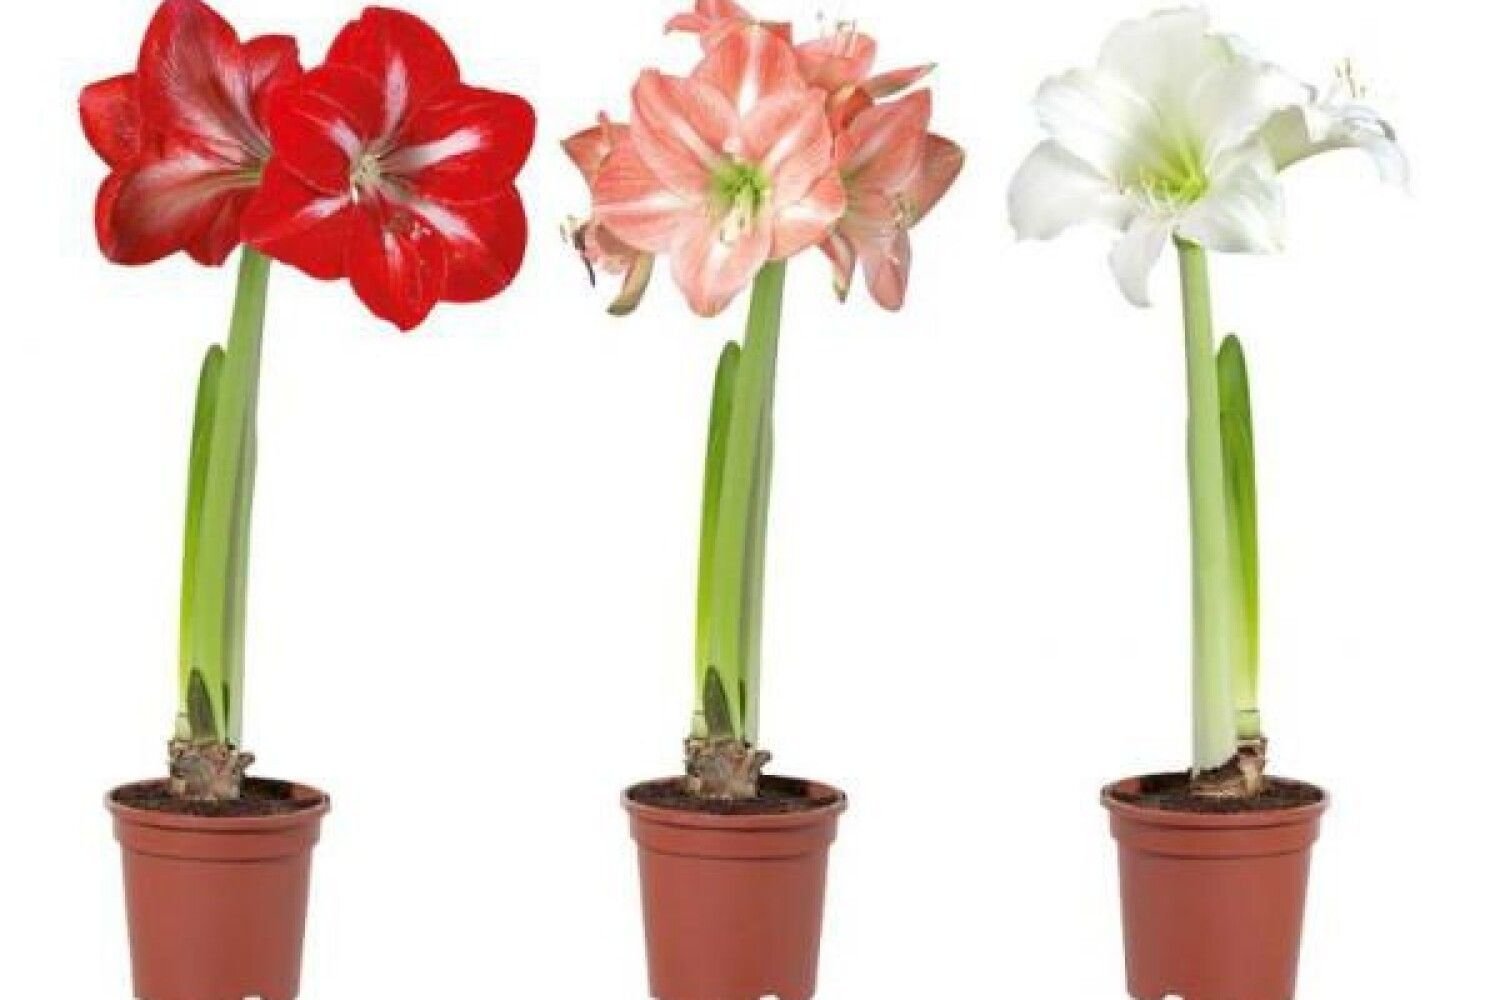 Почему не цветет амариллис в домашних условиях